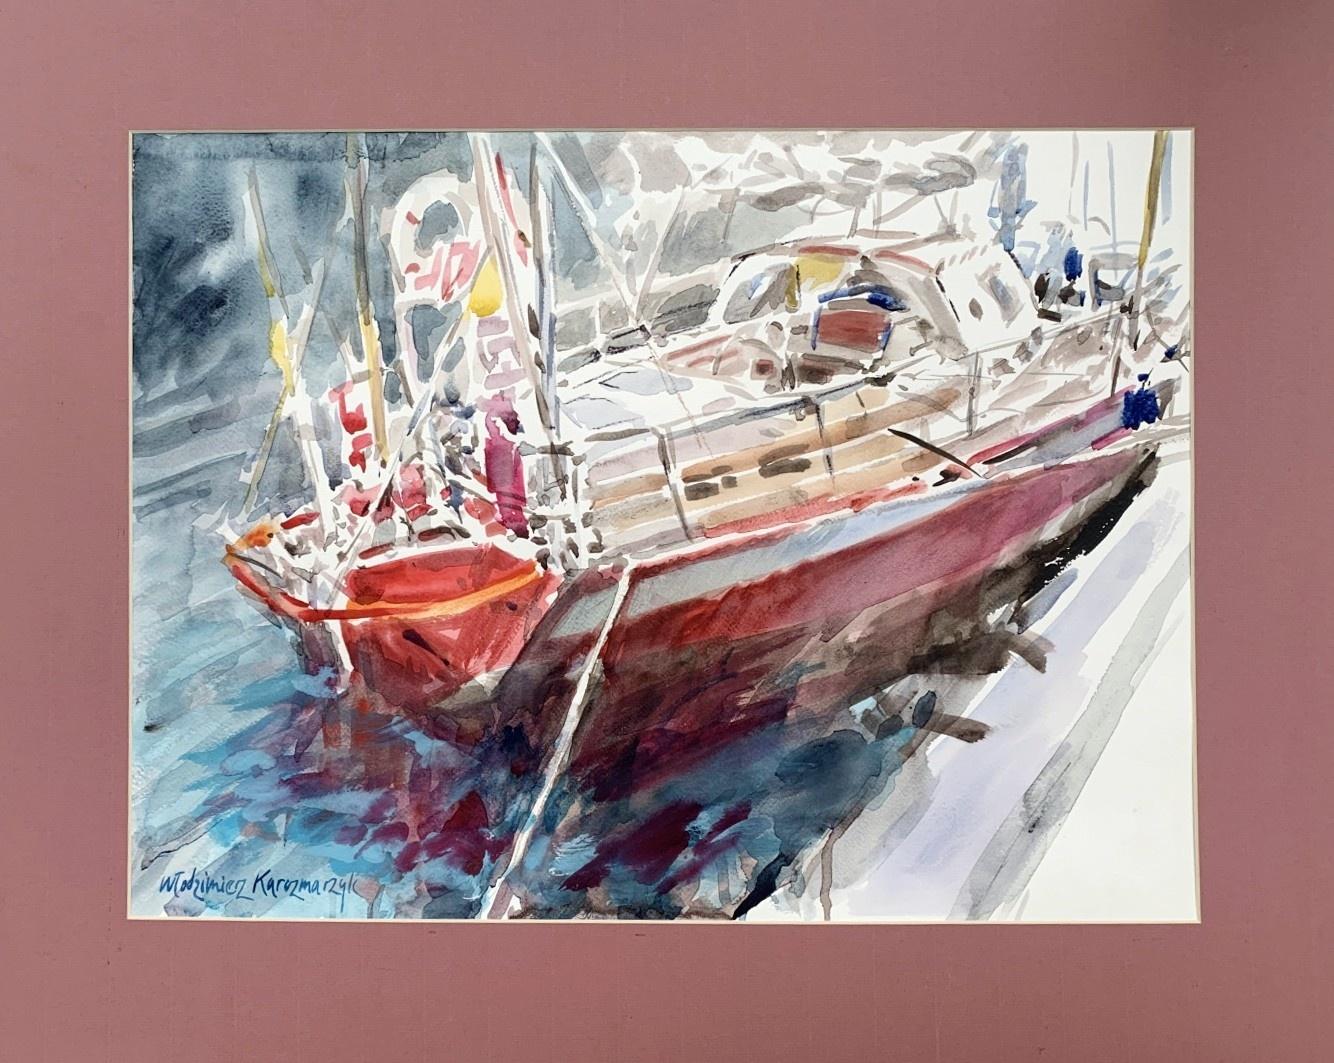 Motorboat - Watercolor, Realistic, Classic, Polish artist - Art by Włodzimierz Karczmarzyk